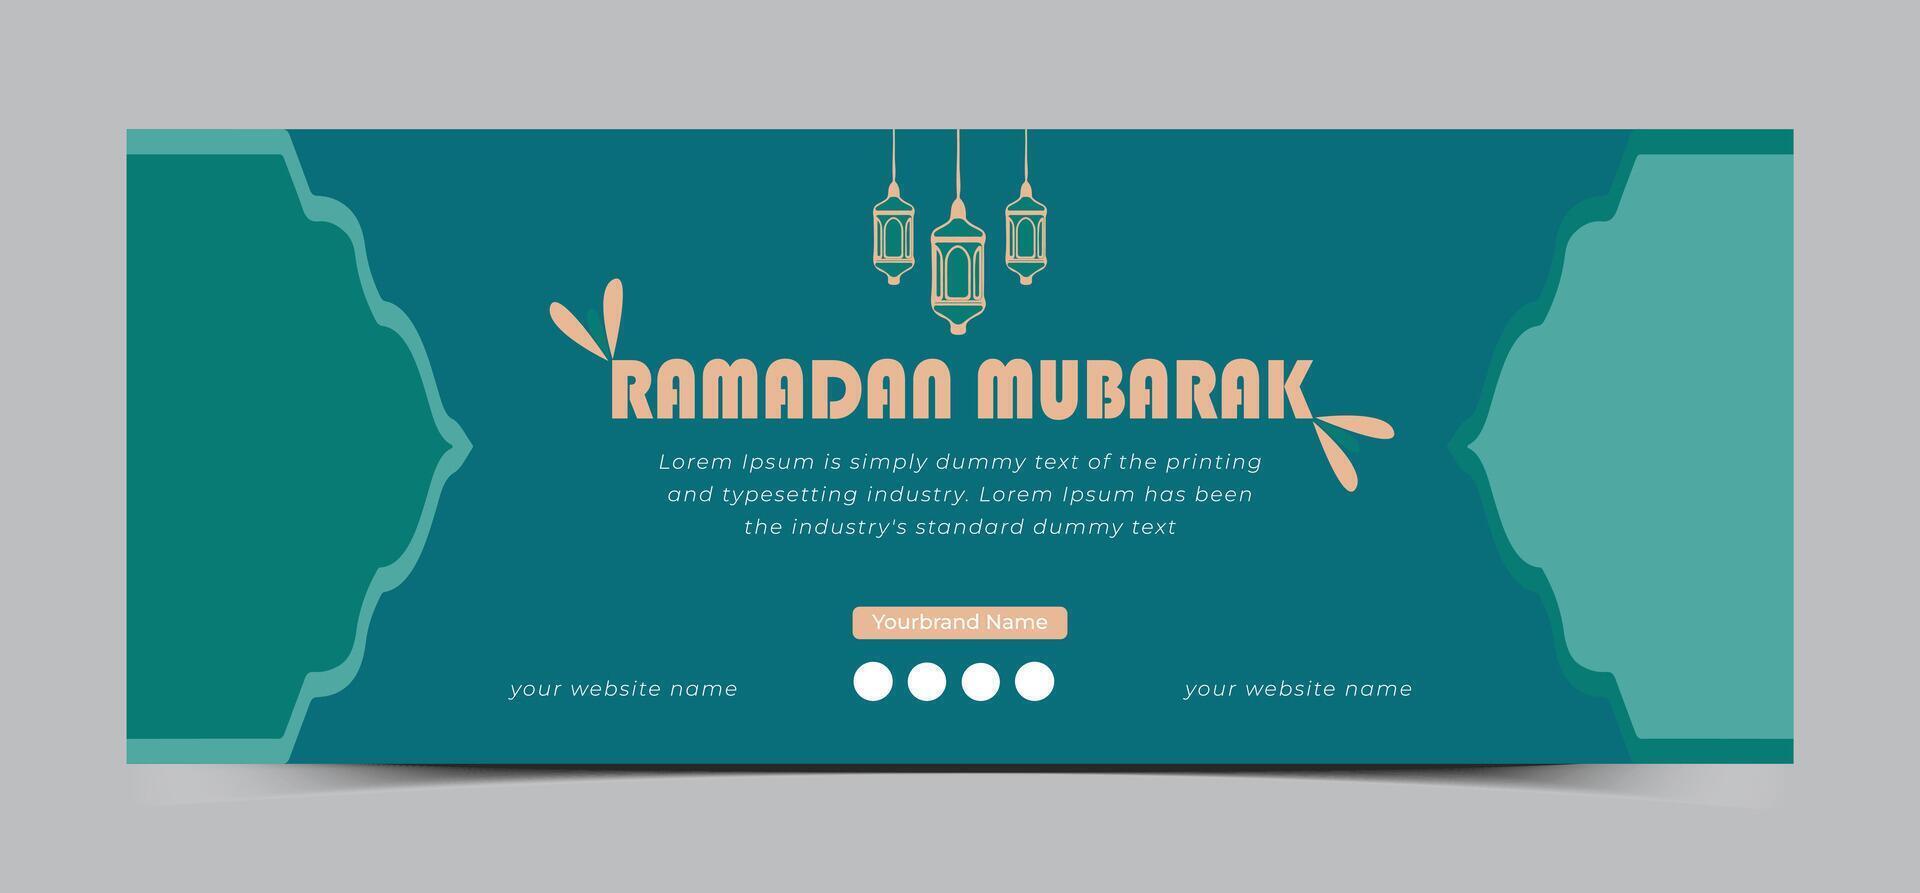 Ramadan Mubarak social media cover design template vector